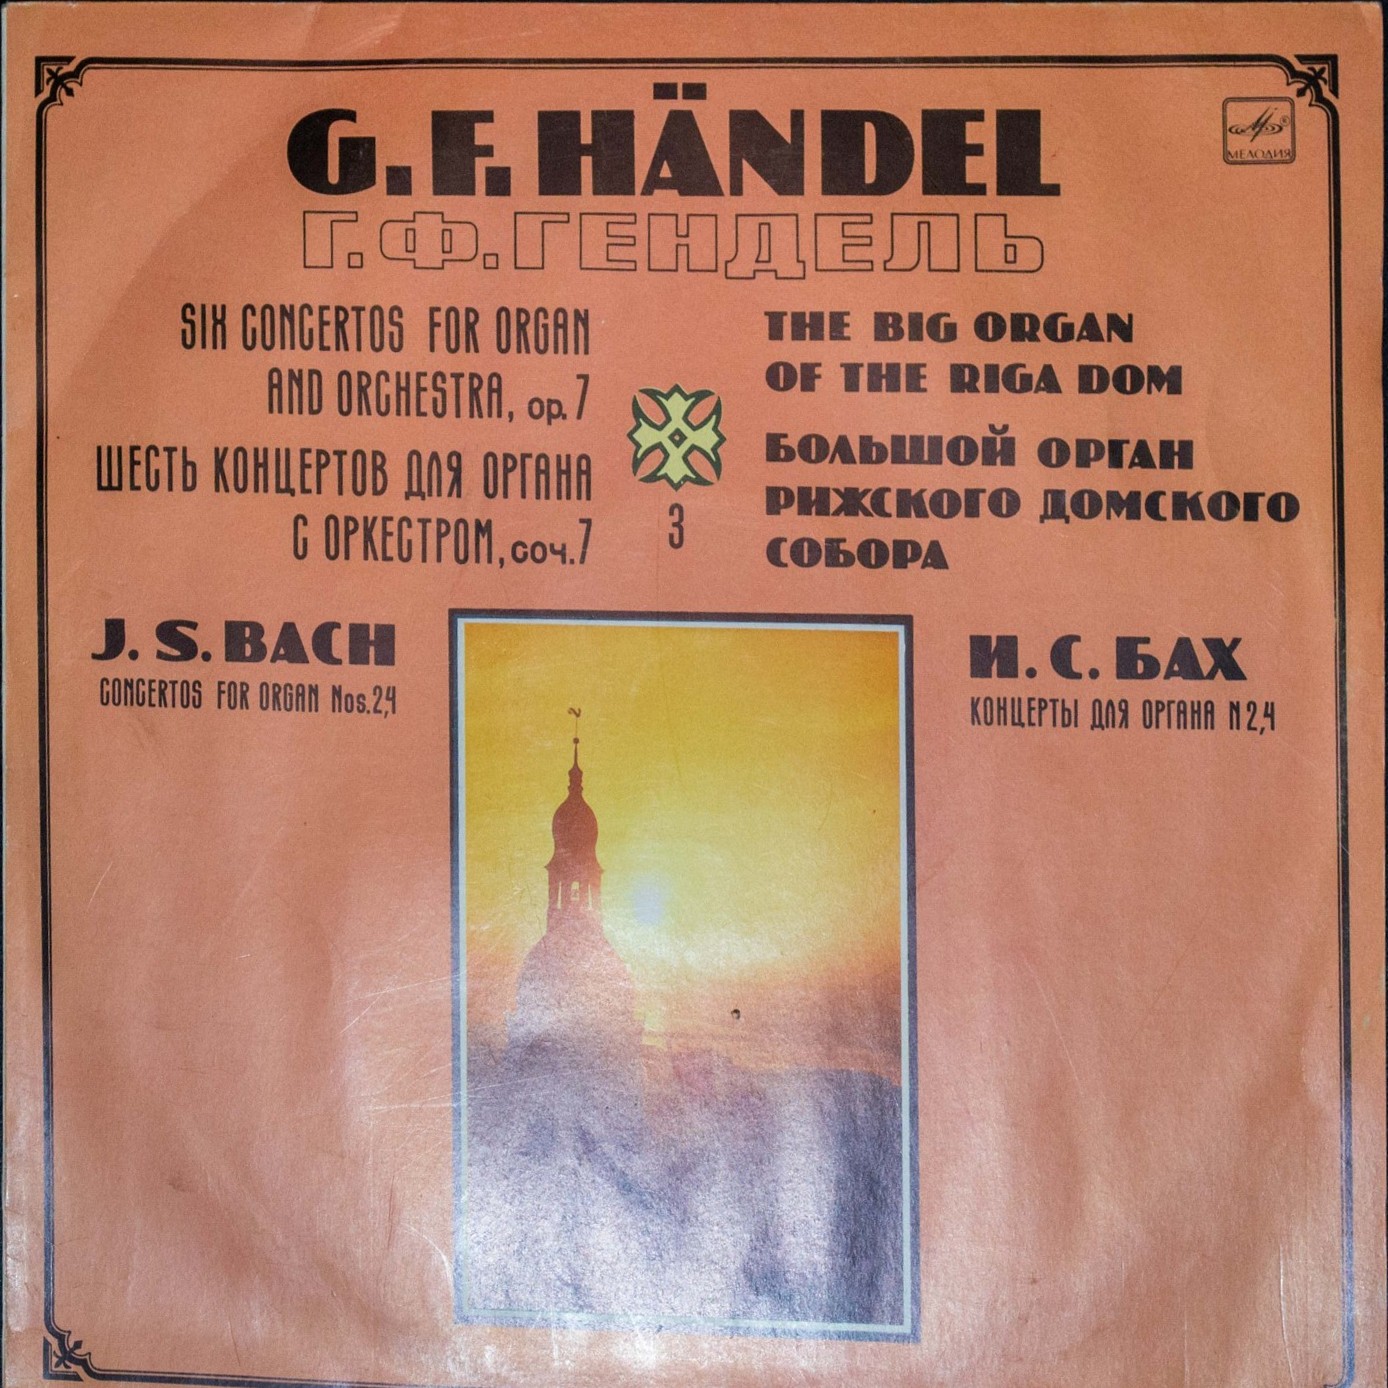 Гендель, Бах: Концерты для органа - Е. ЛИСИЦИНА (орган)